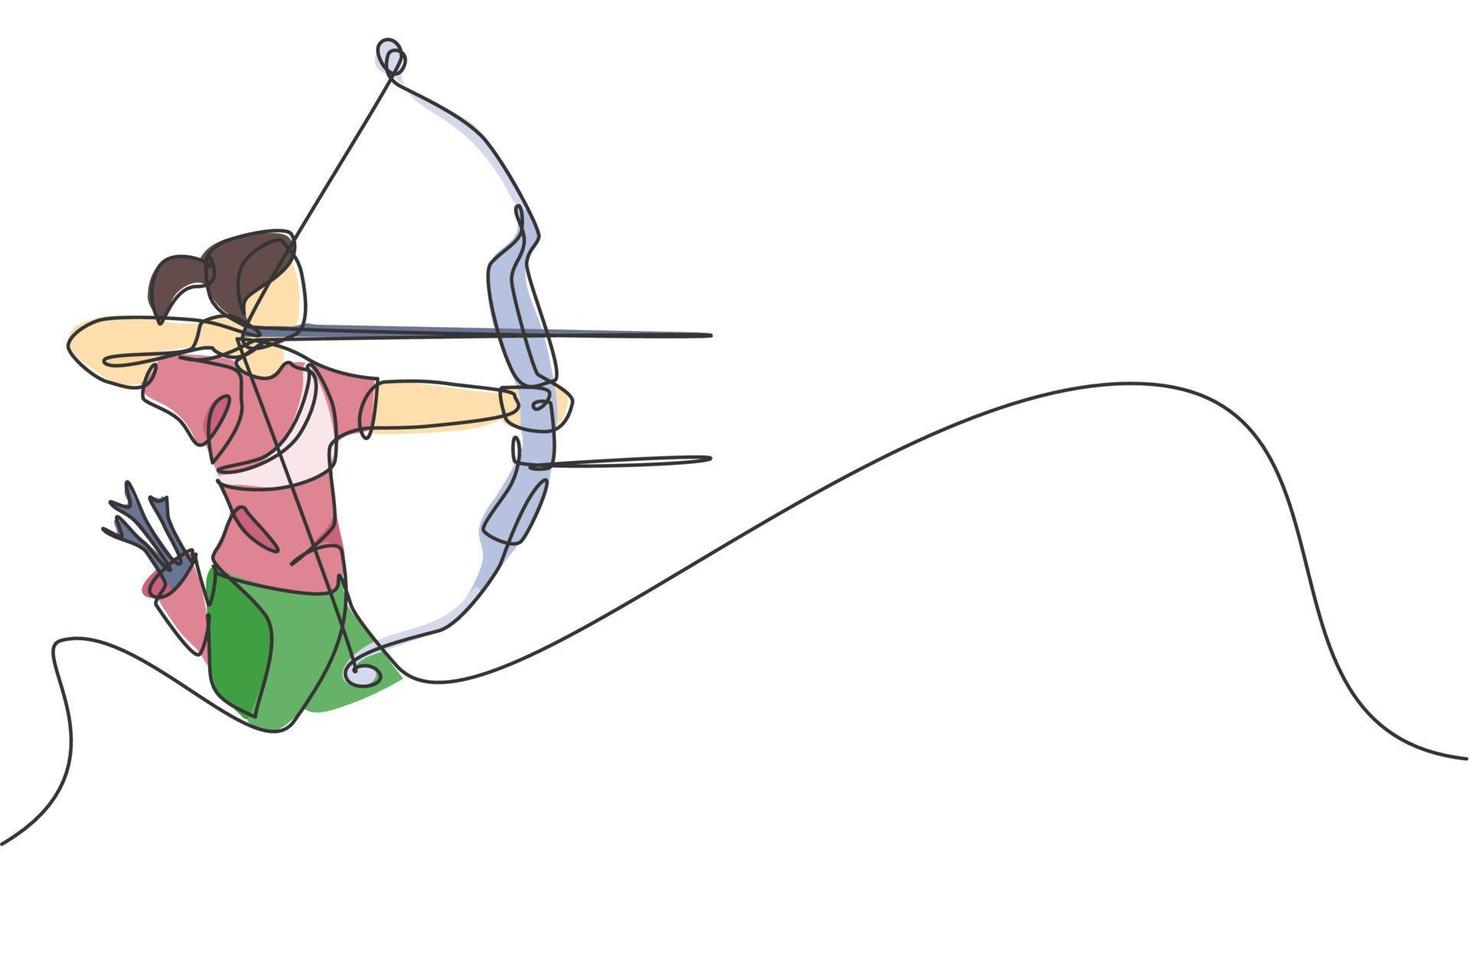 disegno a linea continua singola di una giovane donna arciere professionista che punta al bersaglio di tiro con l'arco. esercizio sportivo di tiro con l'arco con il concetto di arco. grafico di illustrazione vettoriale di disegno di una linea alla moda